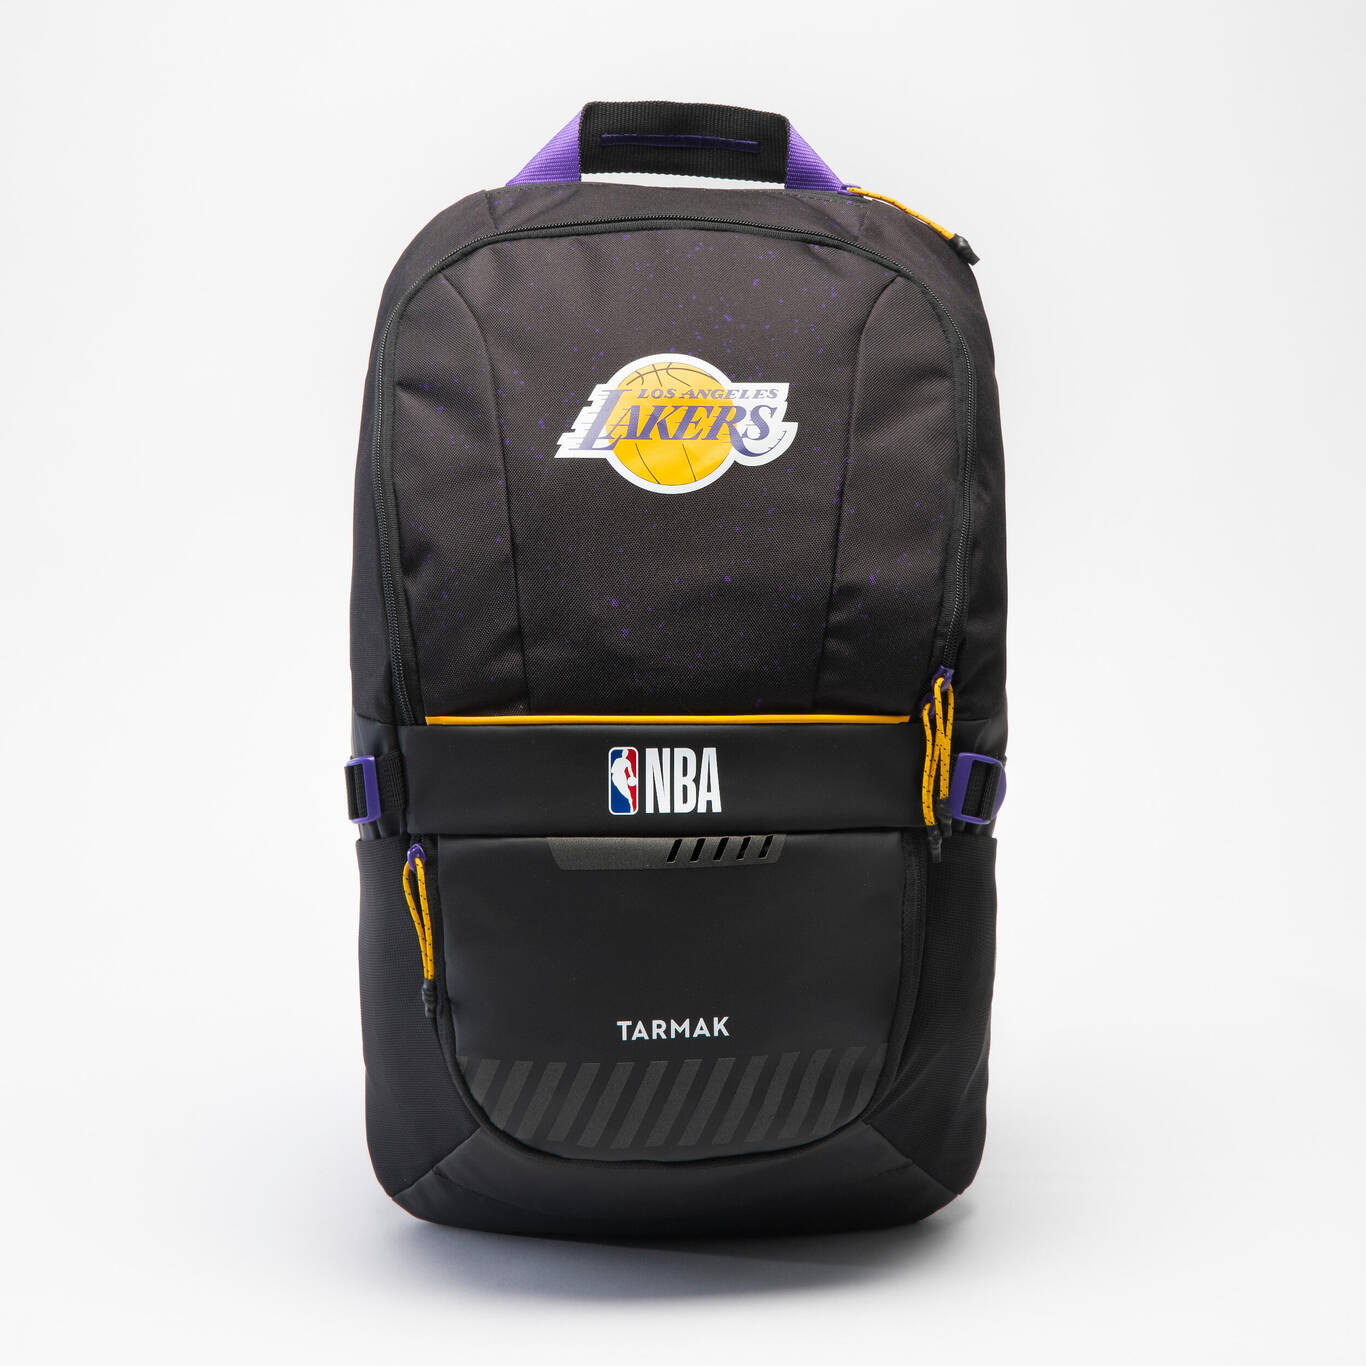 កាតាបស្ពាយNBA Lakers - ពណ៌ខ្មៅ ចំណុះ 25លីត្រ